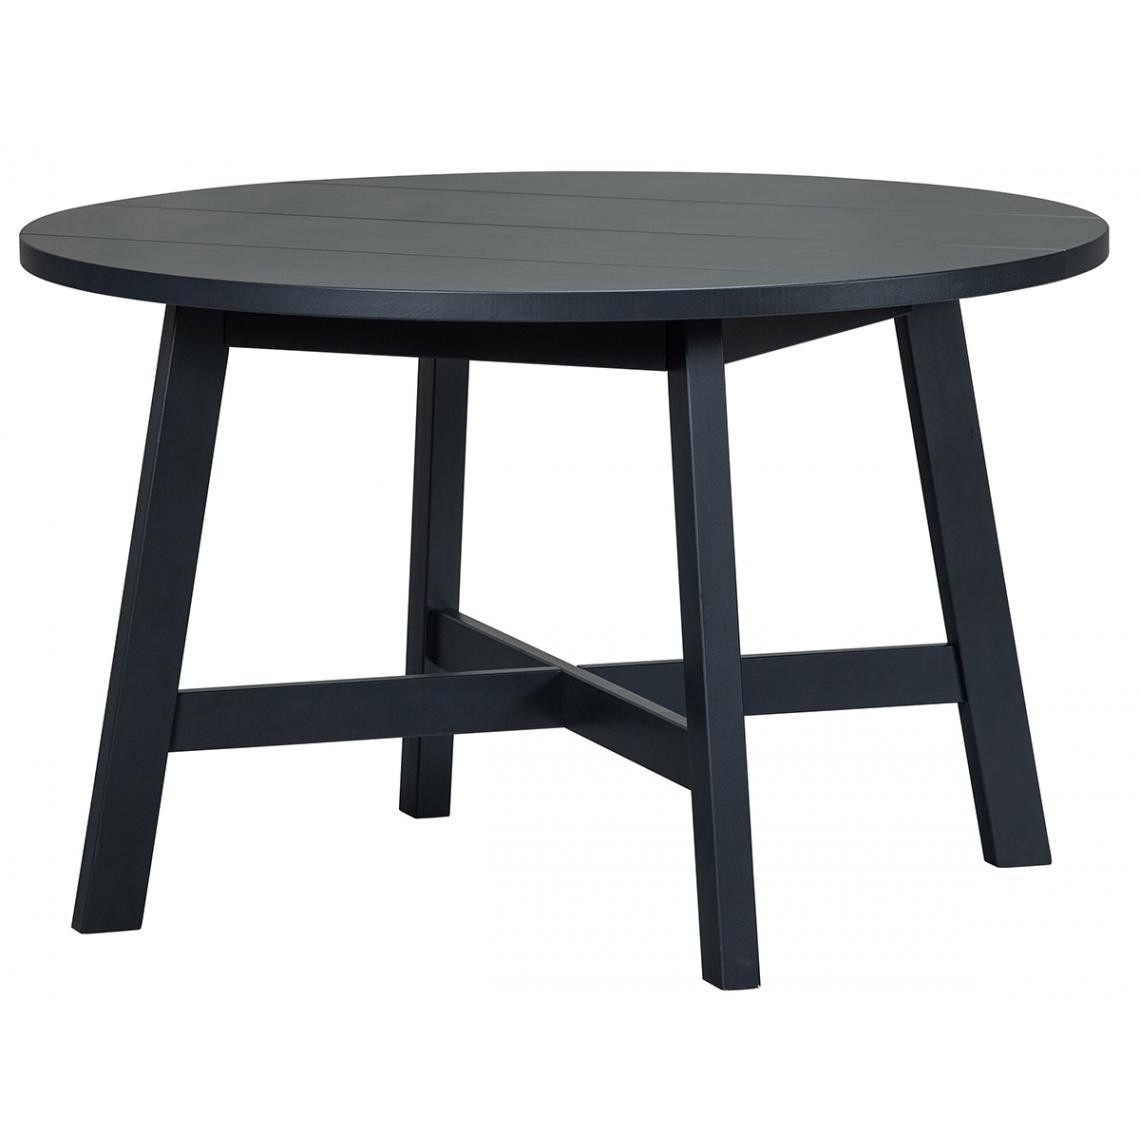 Pegane - Table à manger ronde en pin massif coloris noir mat - Hauteur 75 x ø 120 cm - Tables à manger